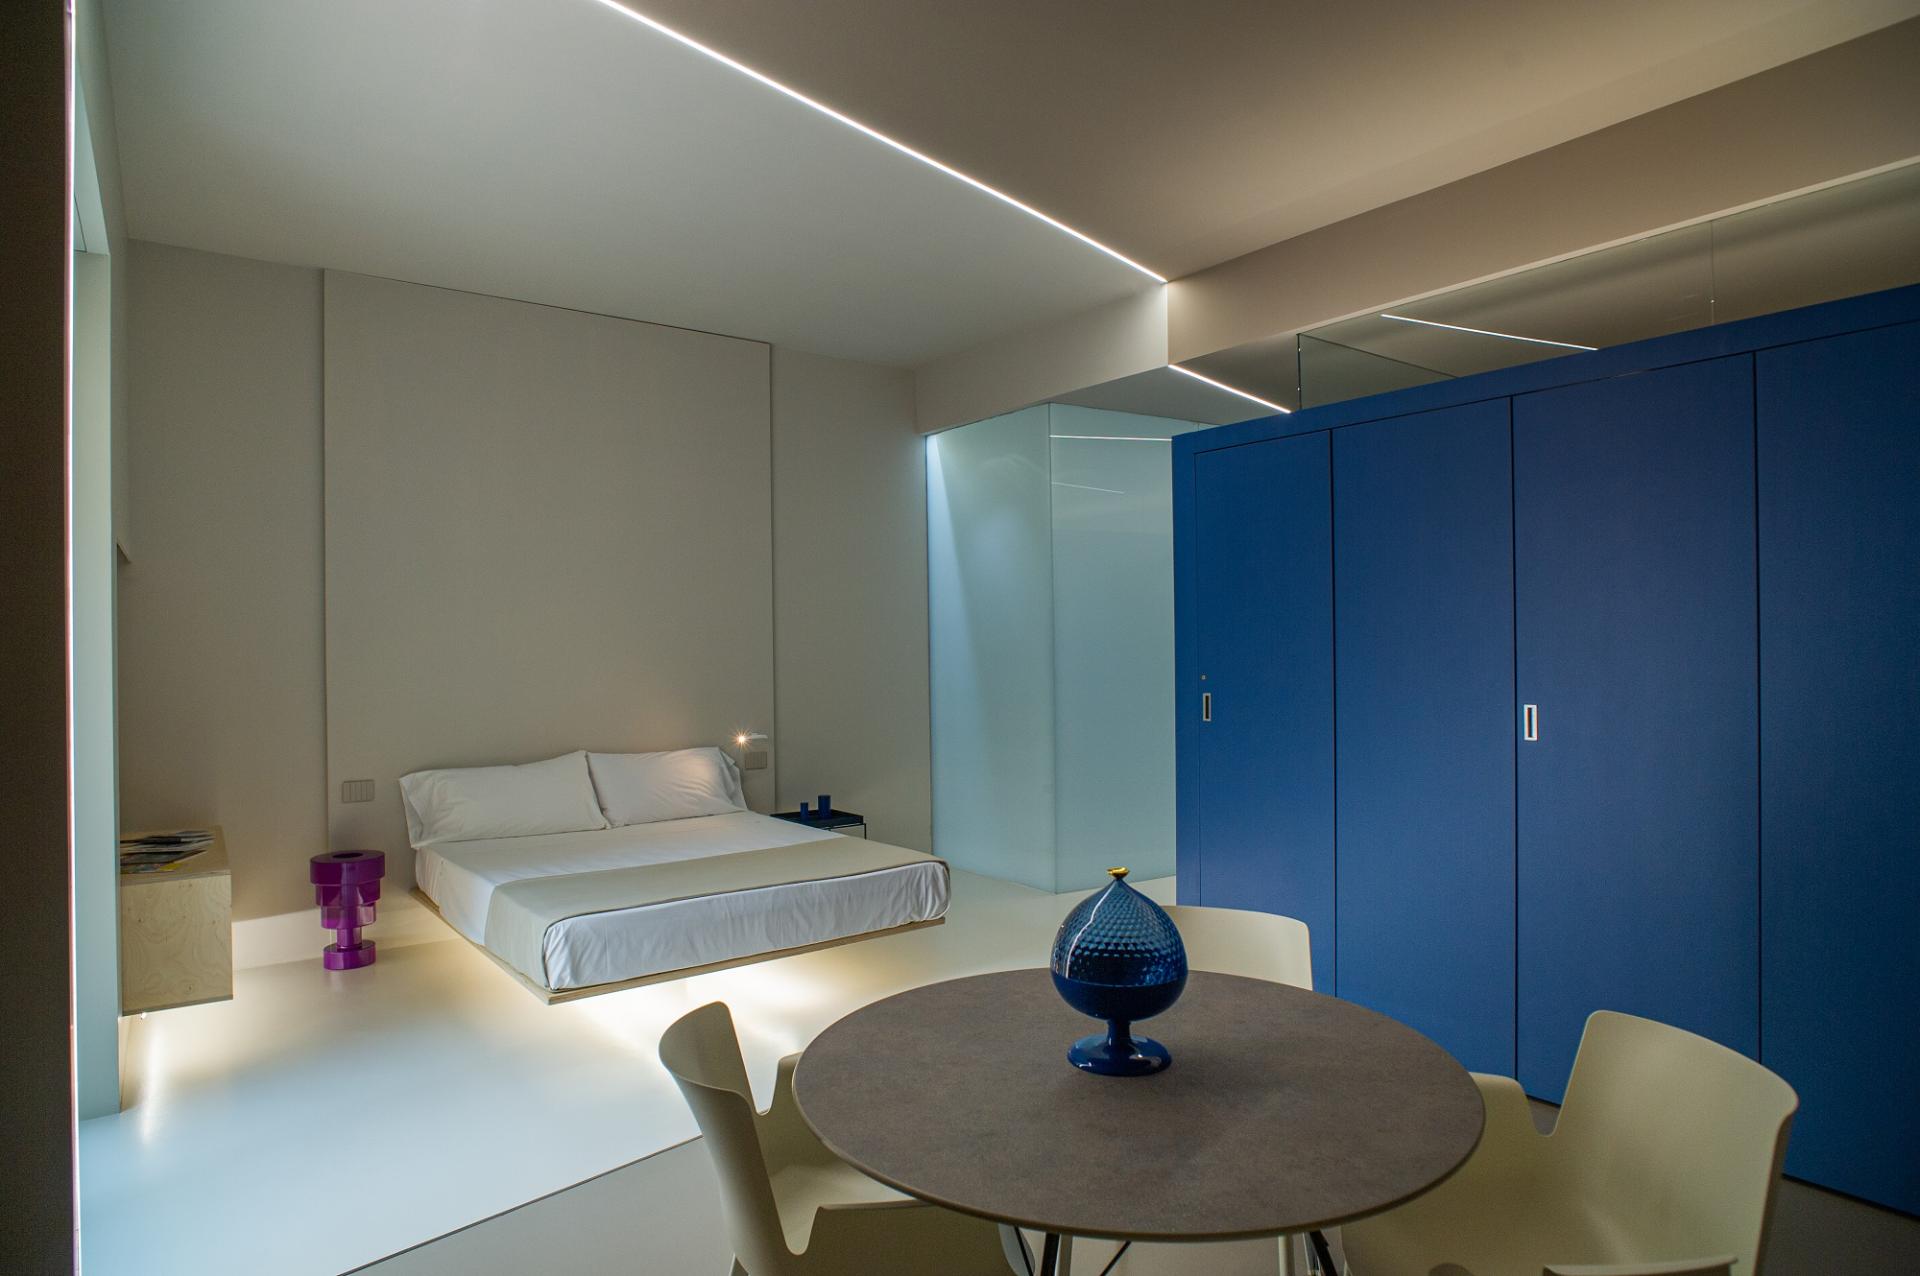 Fiveplace Design Suites & Apartments